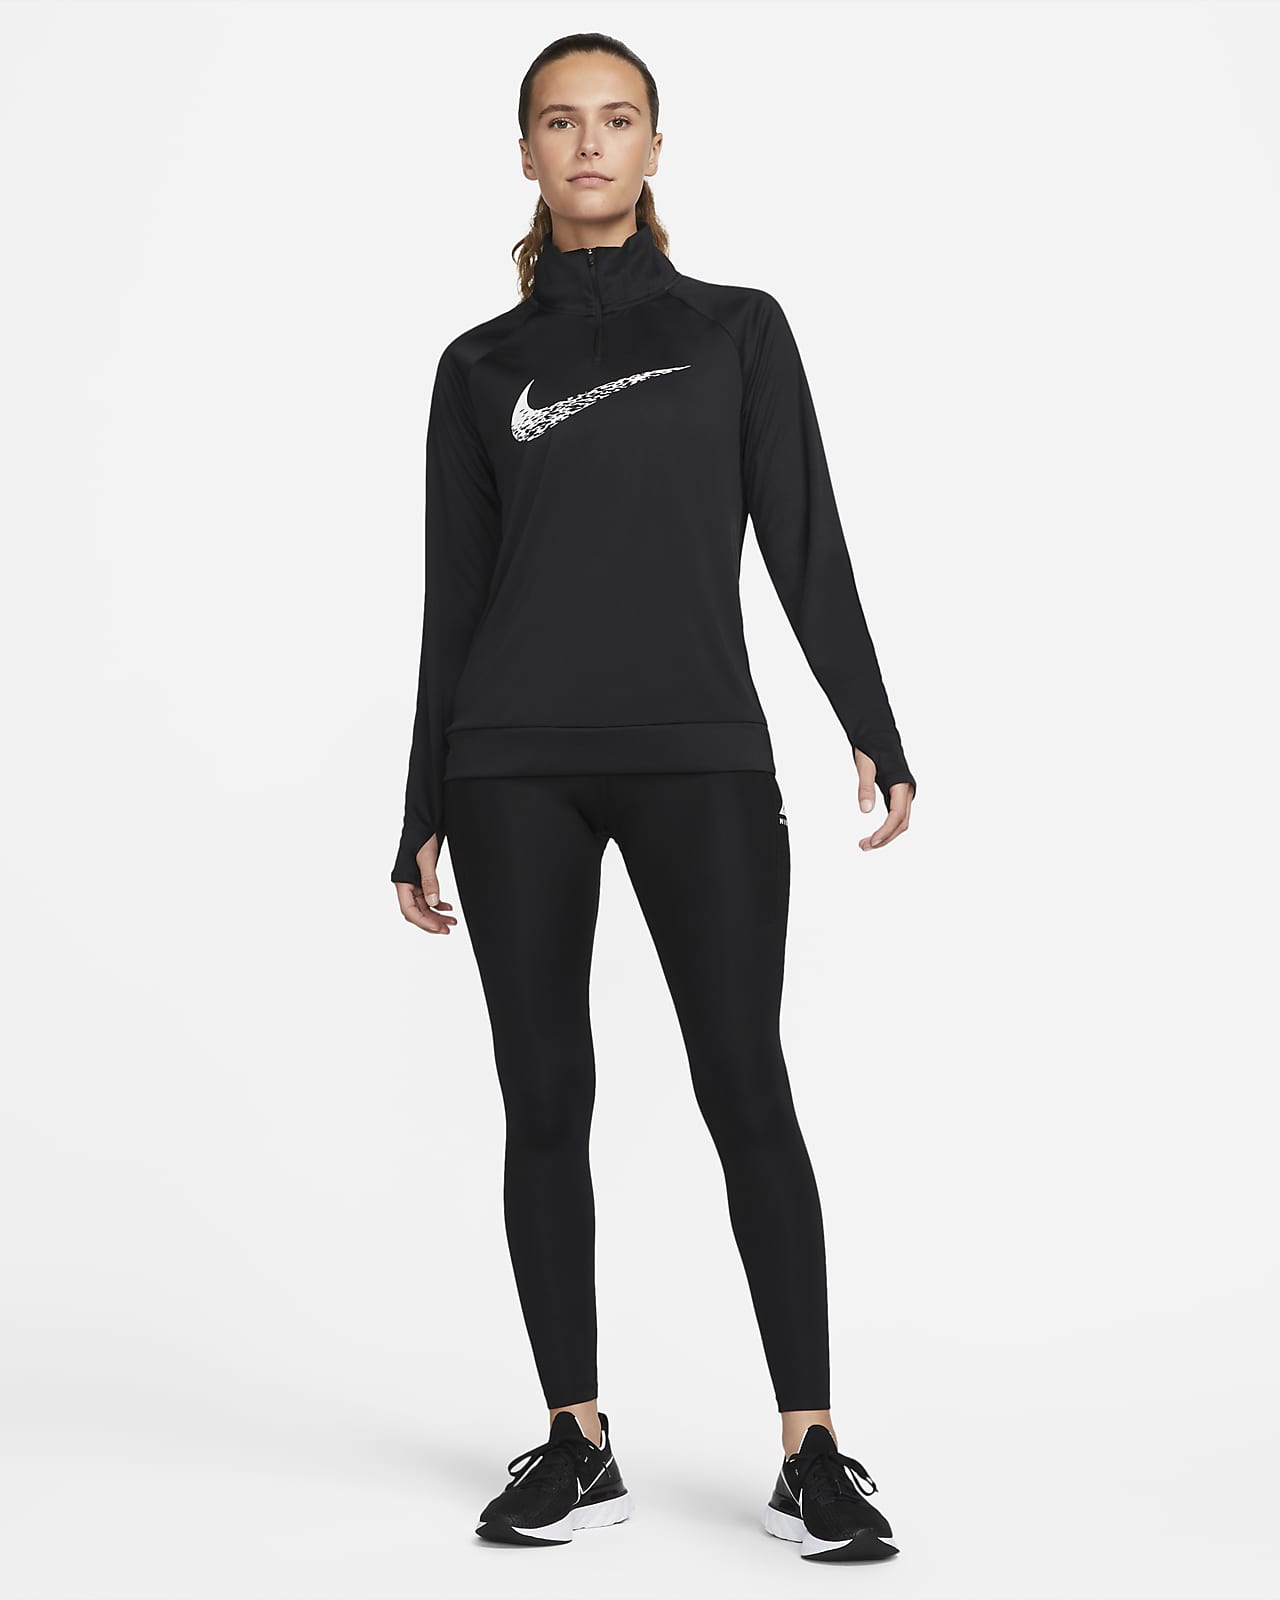 Nike Running - 360 Flash - Bandeau - Noir RN.69-037B